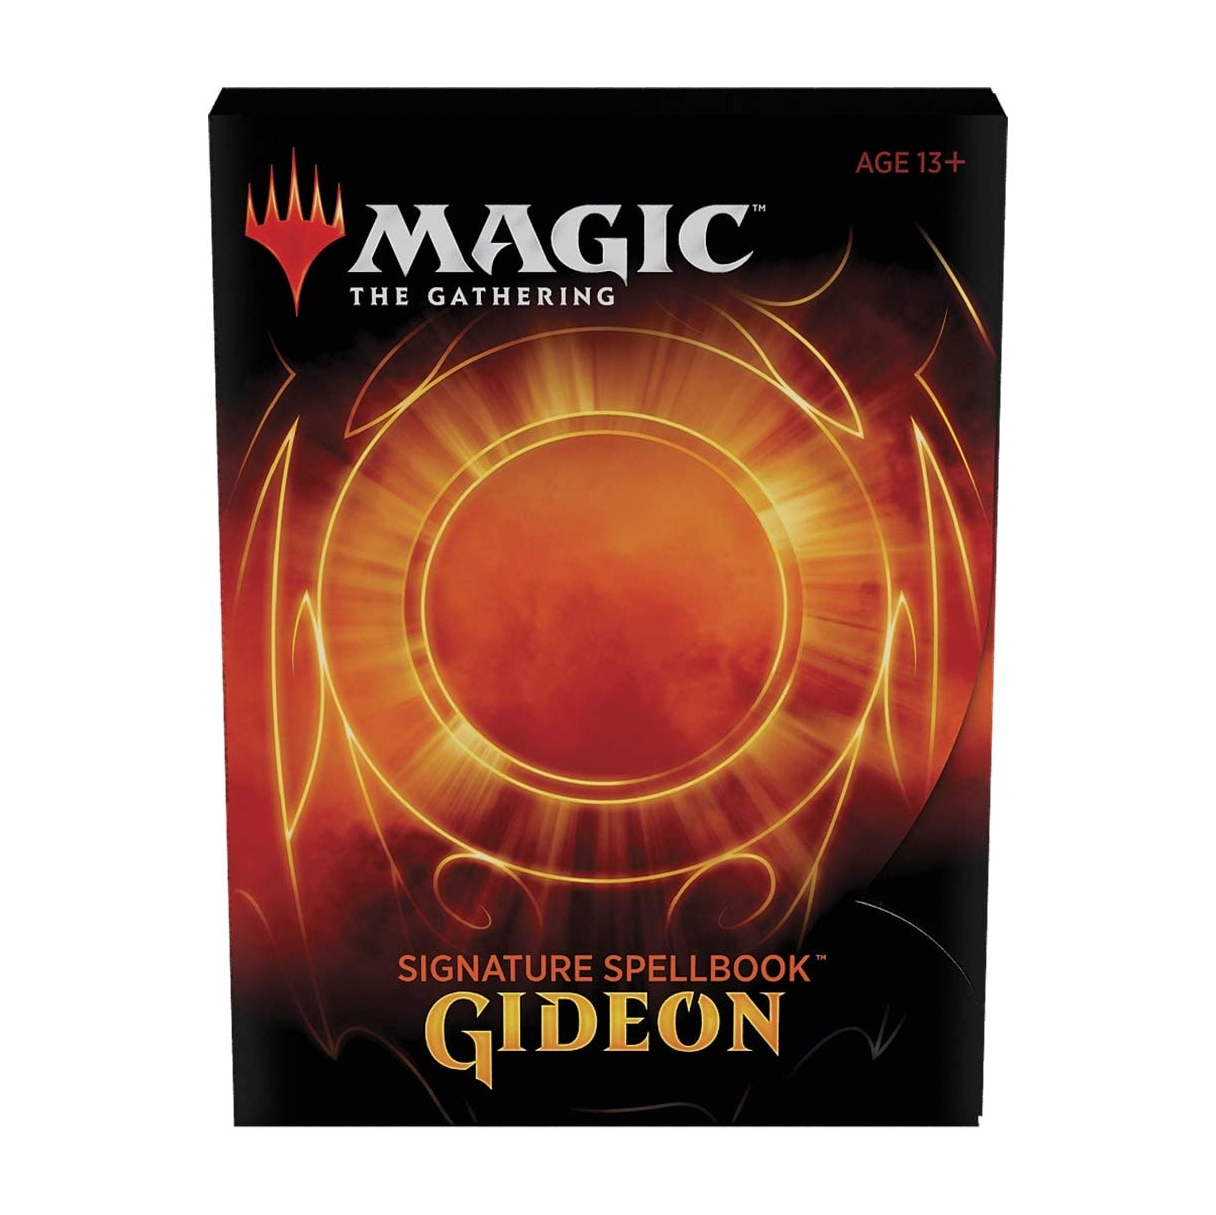 Magic - Signature Spellbook Gideon